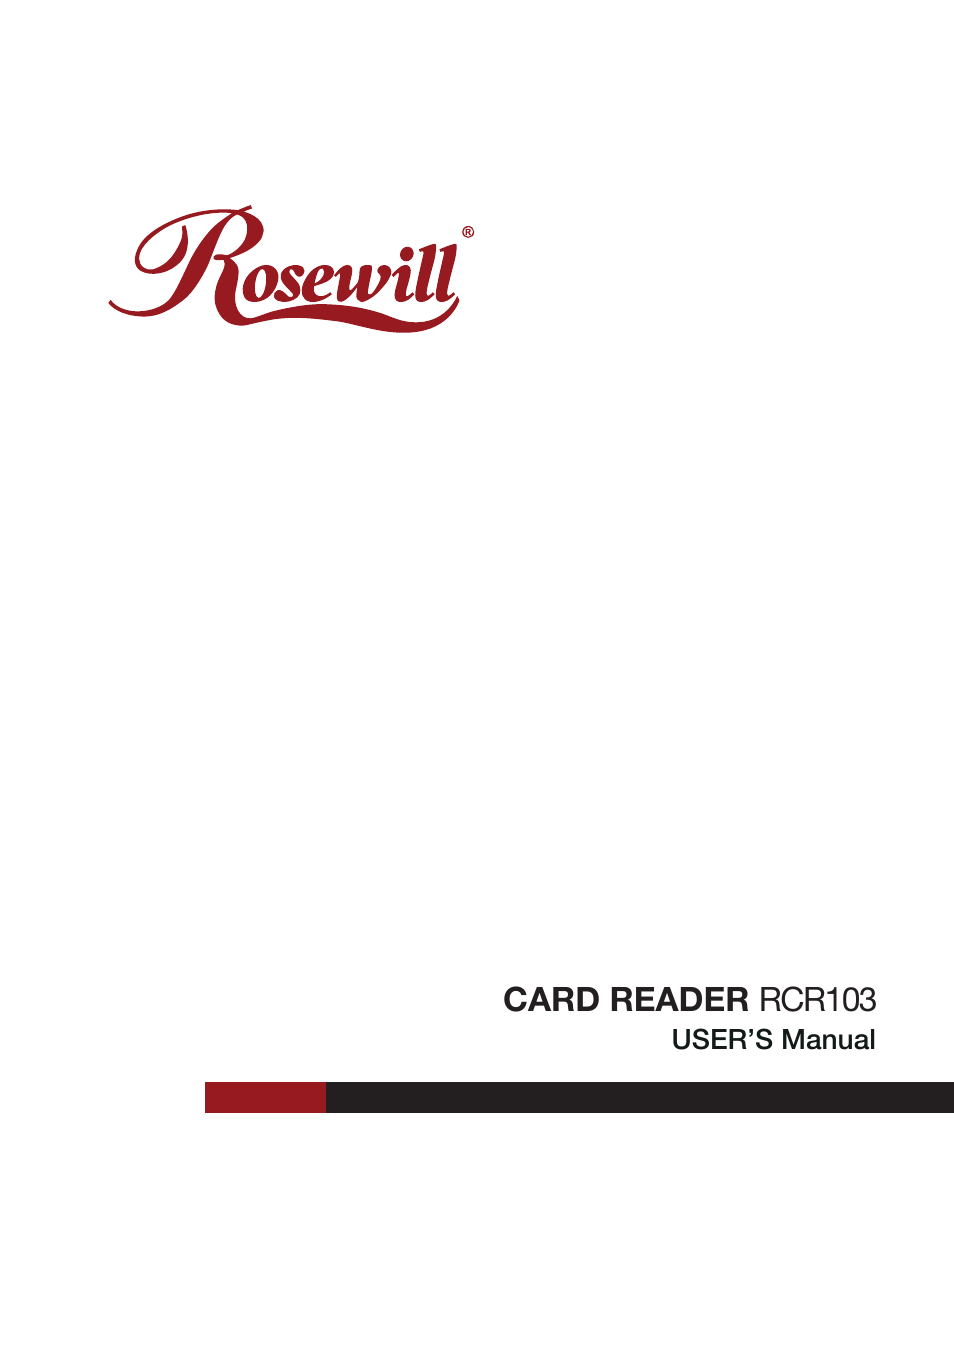 Card Reader RCR103